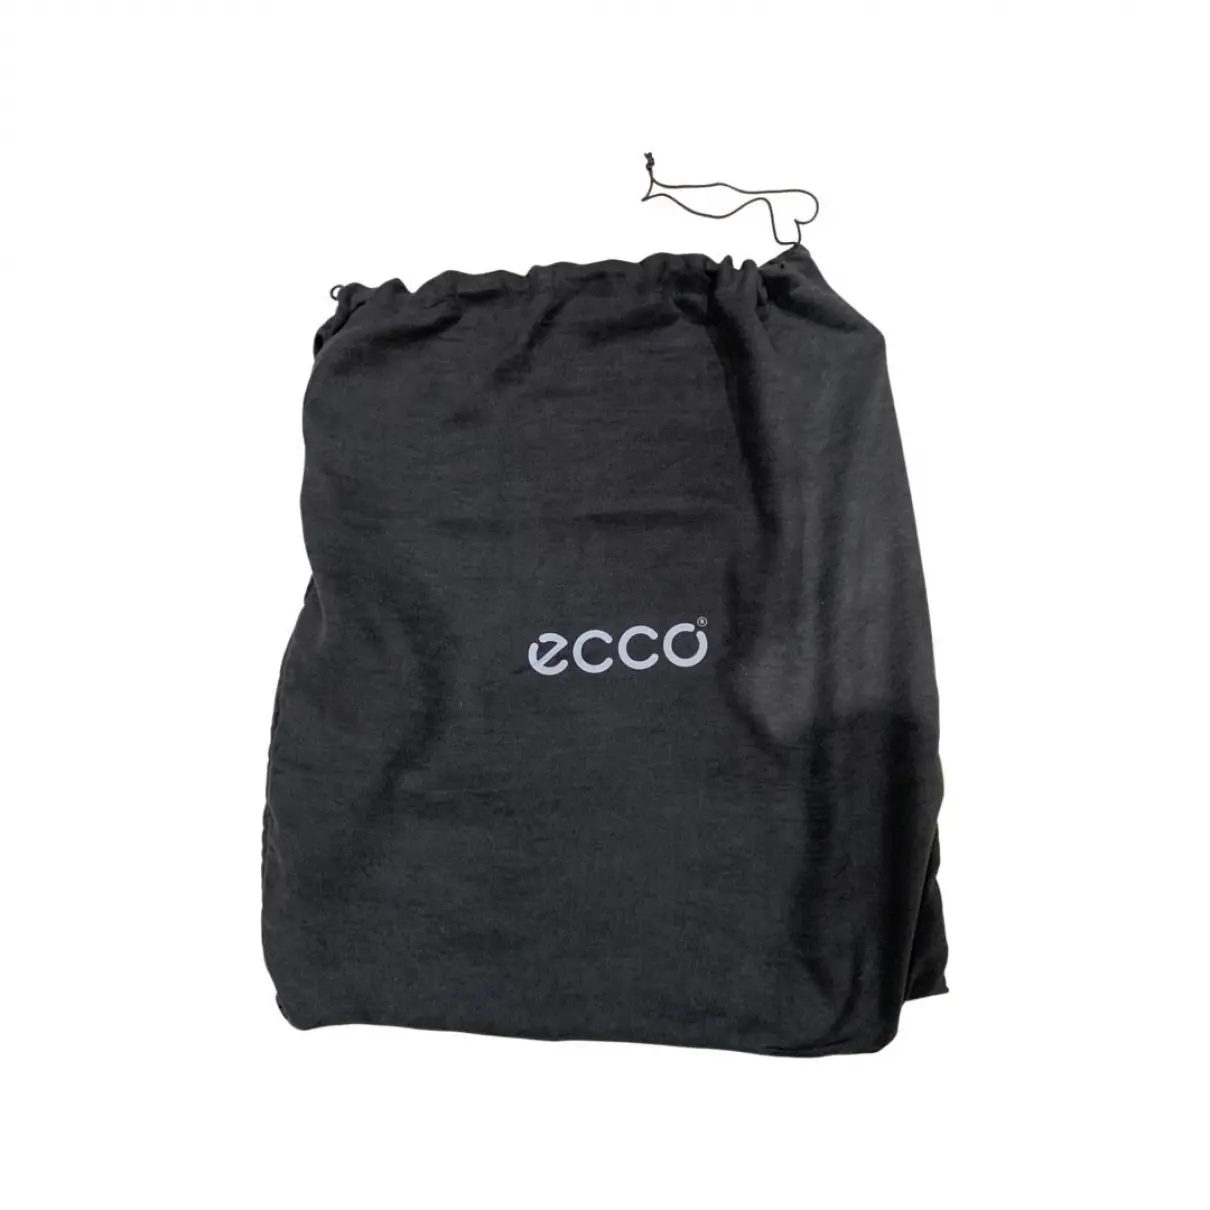 Leather handbag ECCO